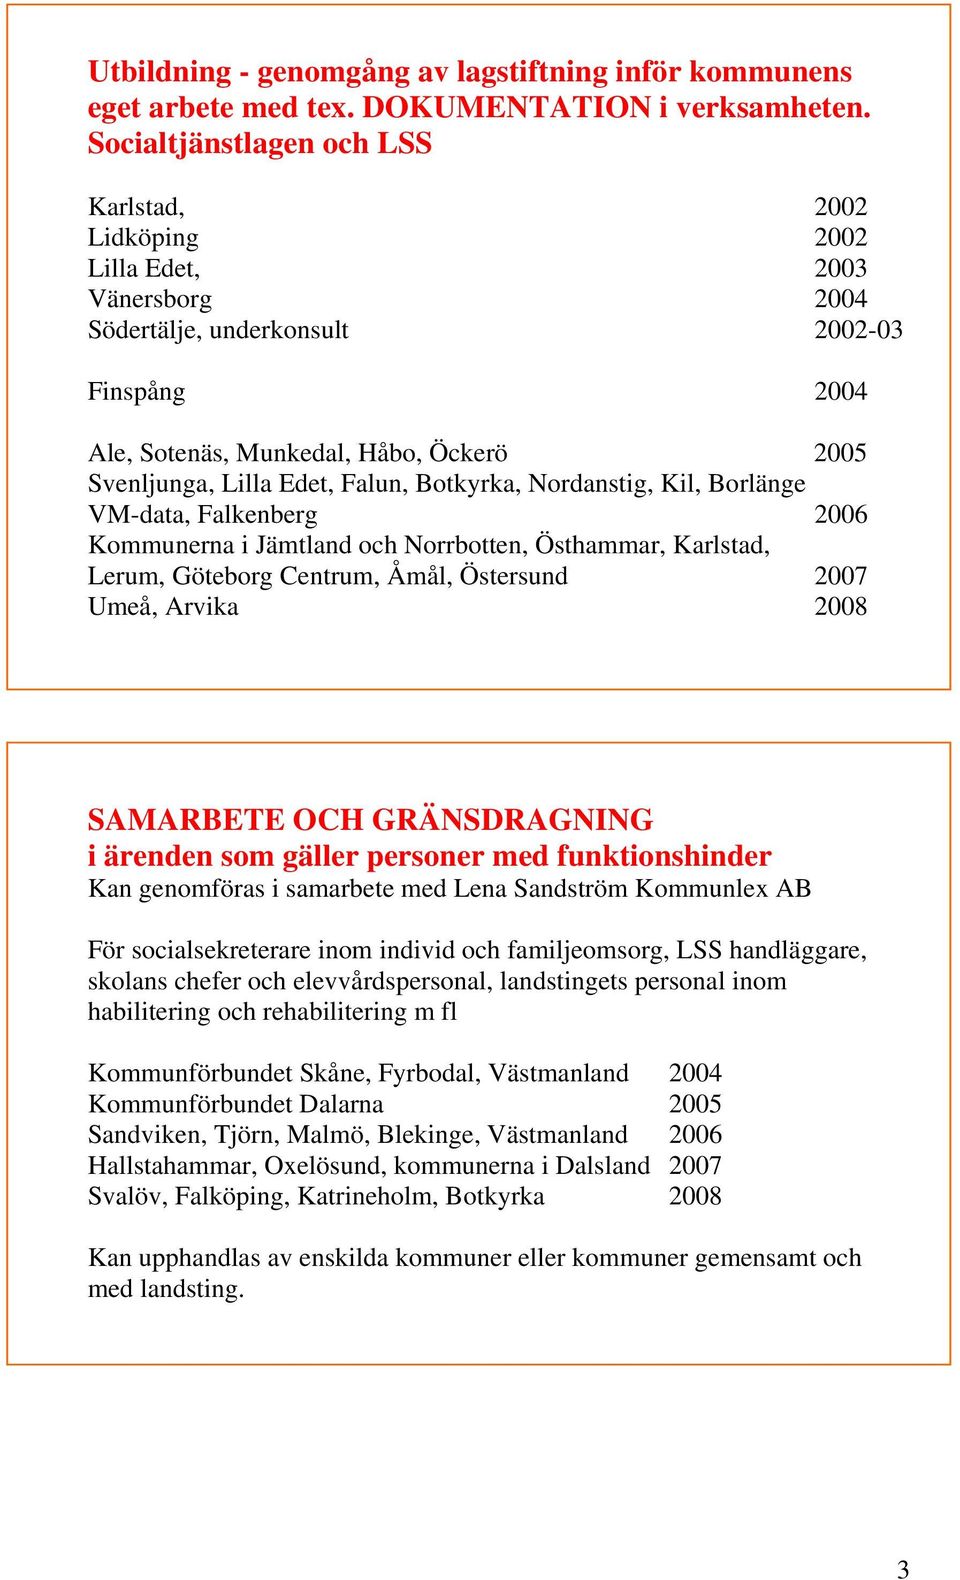 Edet, Falun, Botkyrka, Nordanstig, Kil, Borlänge VM-data, Falkenberg 2006 Kommunerna i Jämtland och Norrbotten, Östhammar, Karlstad, Lerum, Göteborg Centrum, Åmål, Östersund 2007 Umeå, Arvika 2008